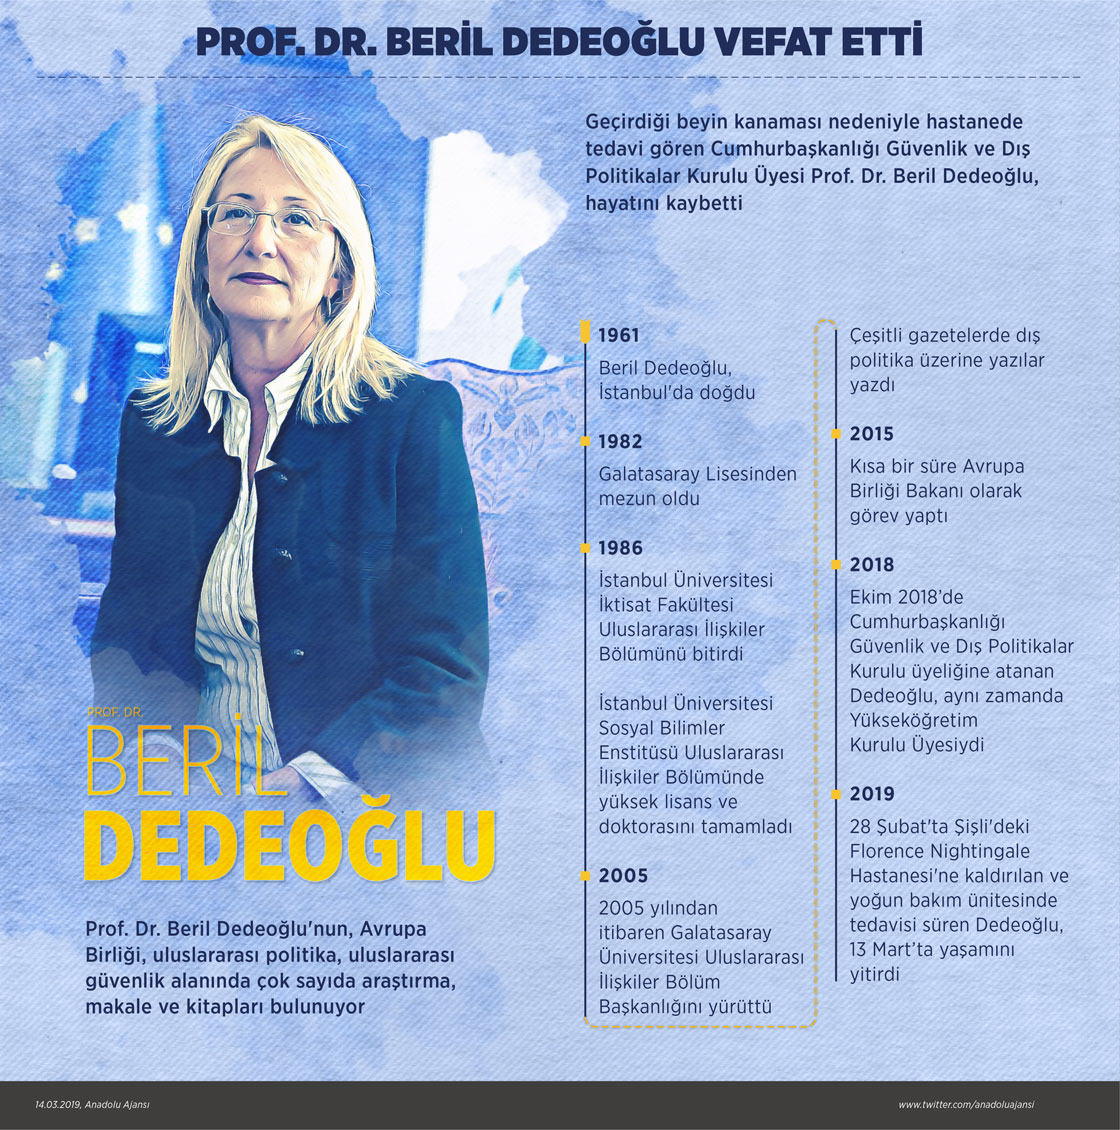 Prof. Dr. Beril Dedeoğlu, vefat etti